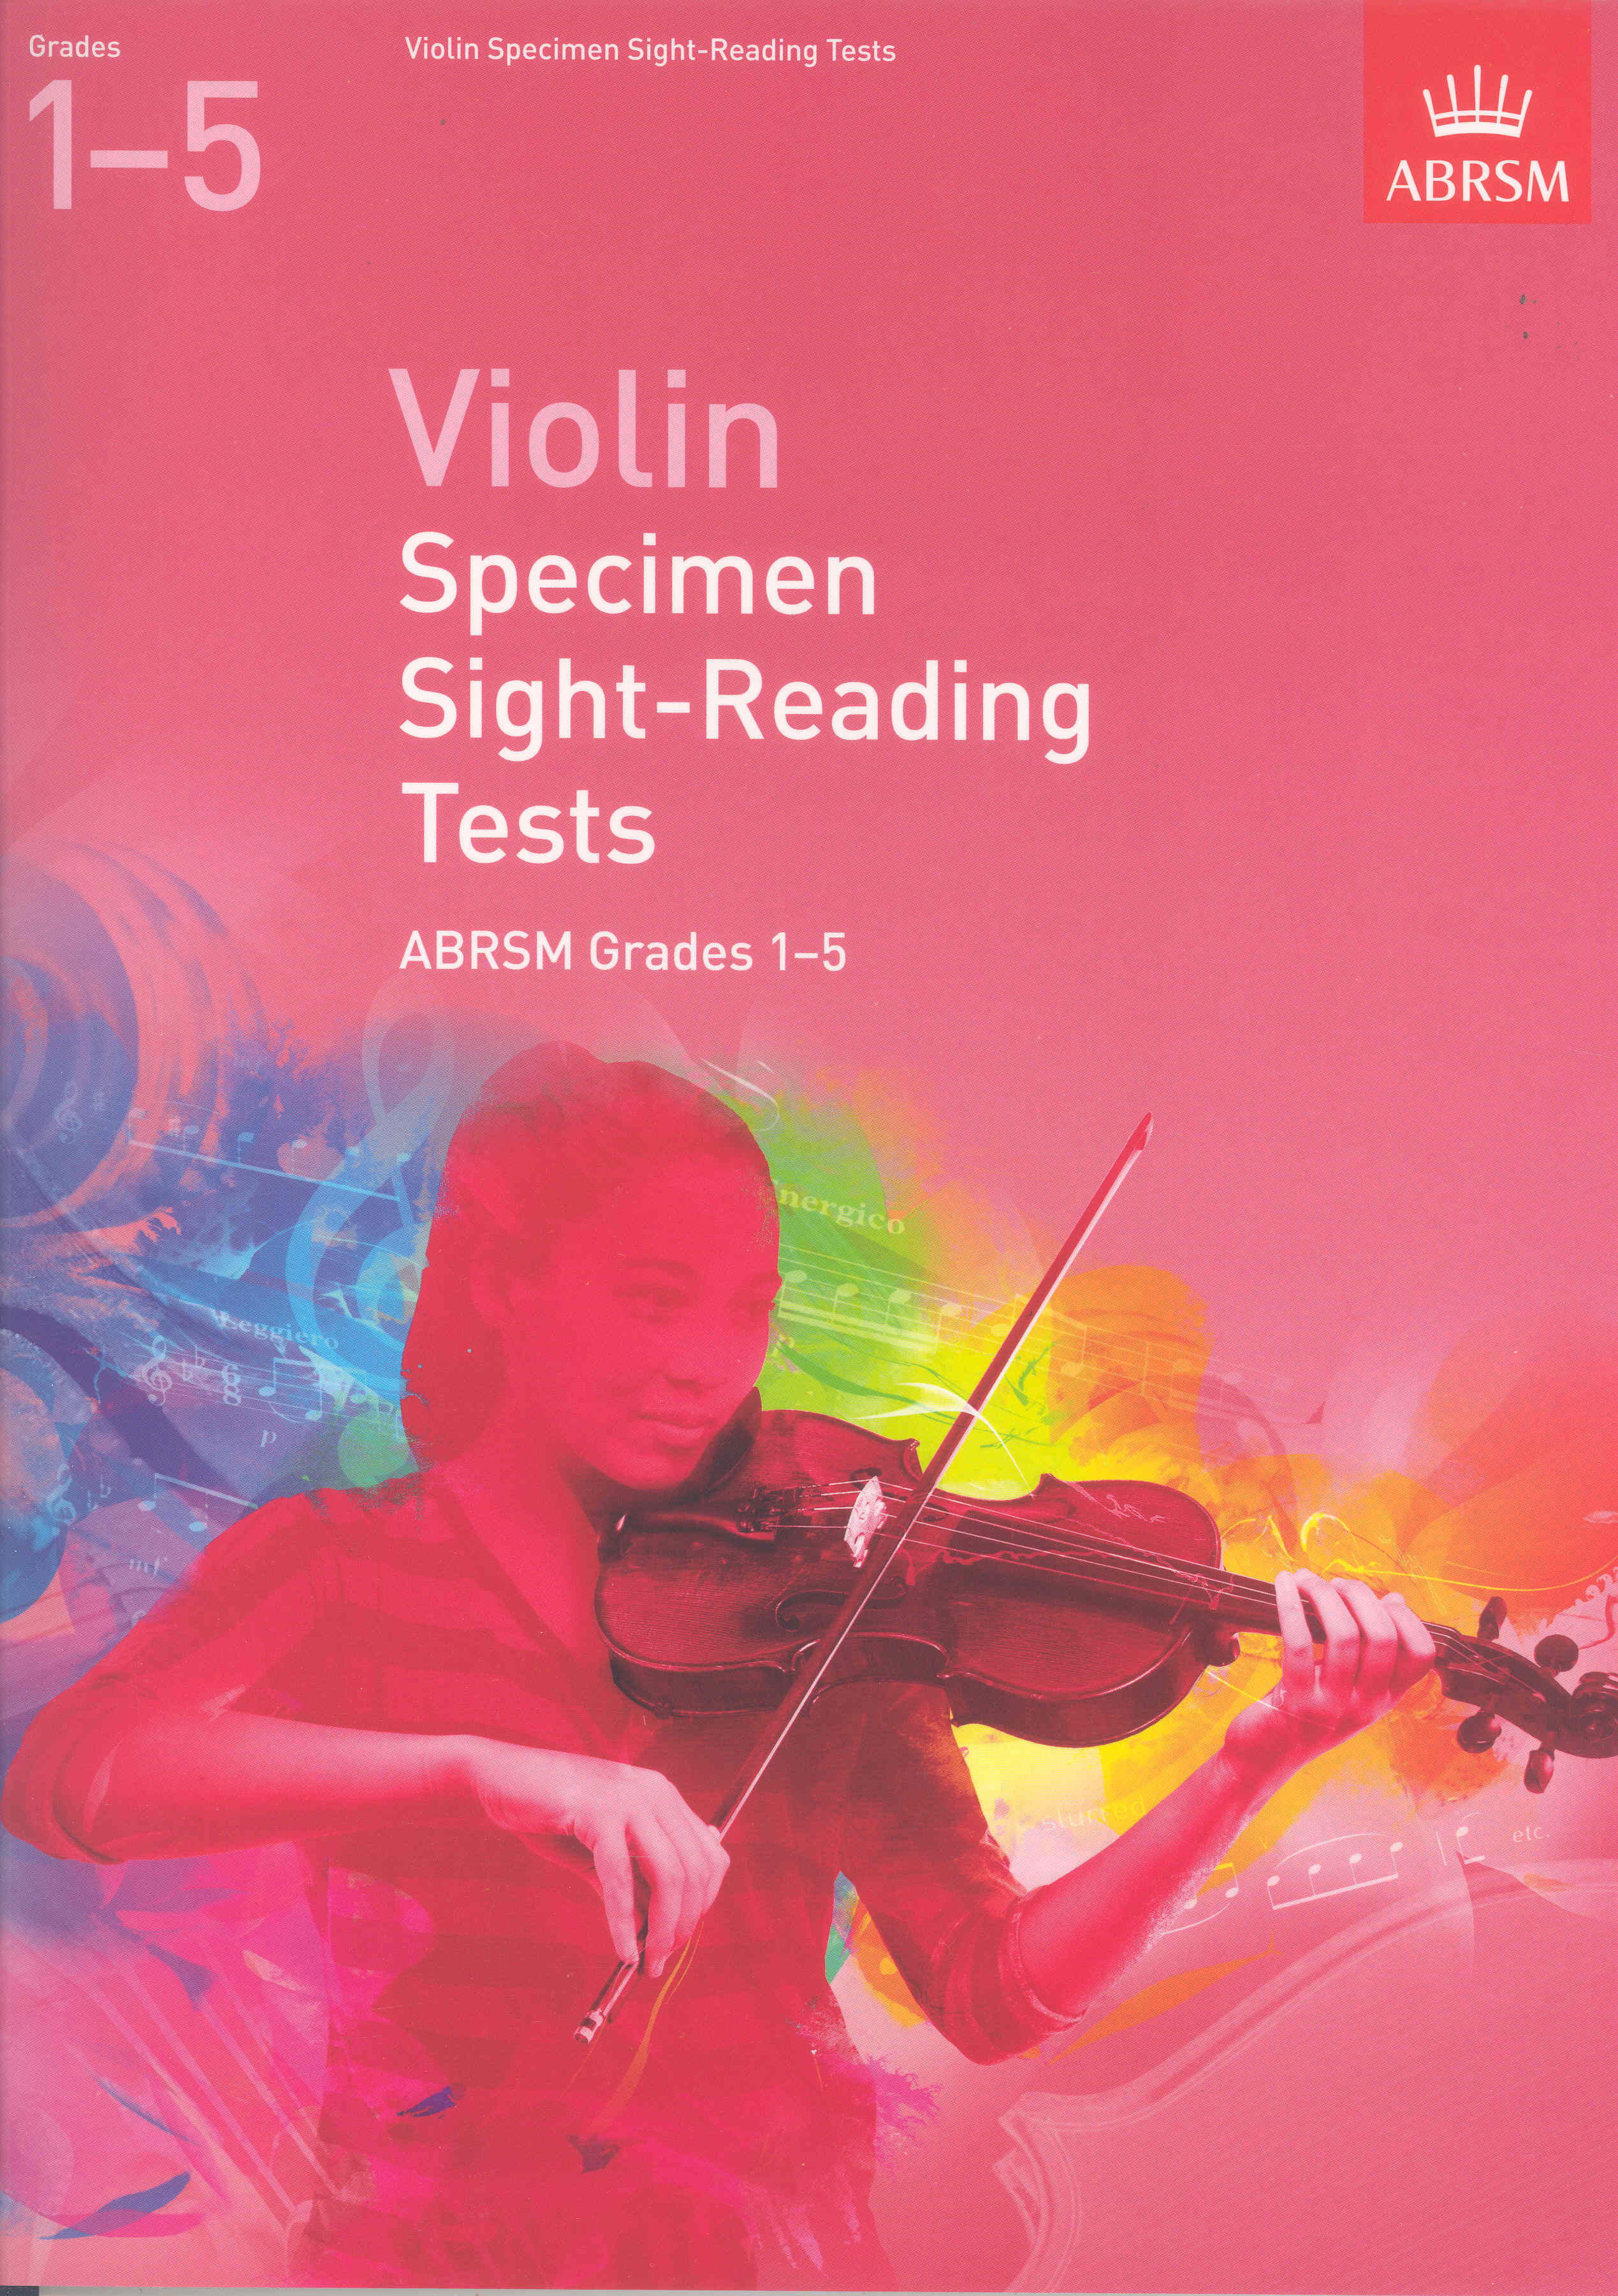 Violin Specimen Sight Reading Grades 1-5 Abrsm Sheet Music Songbook